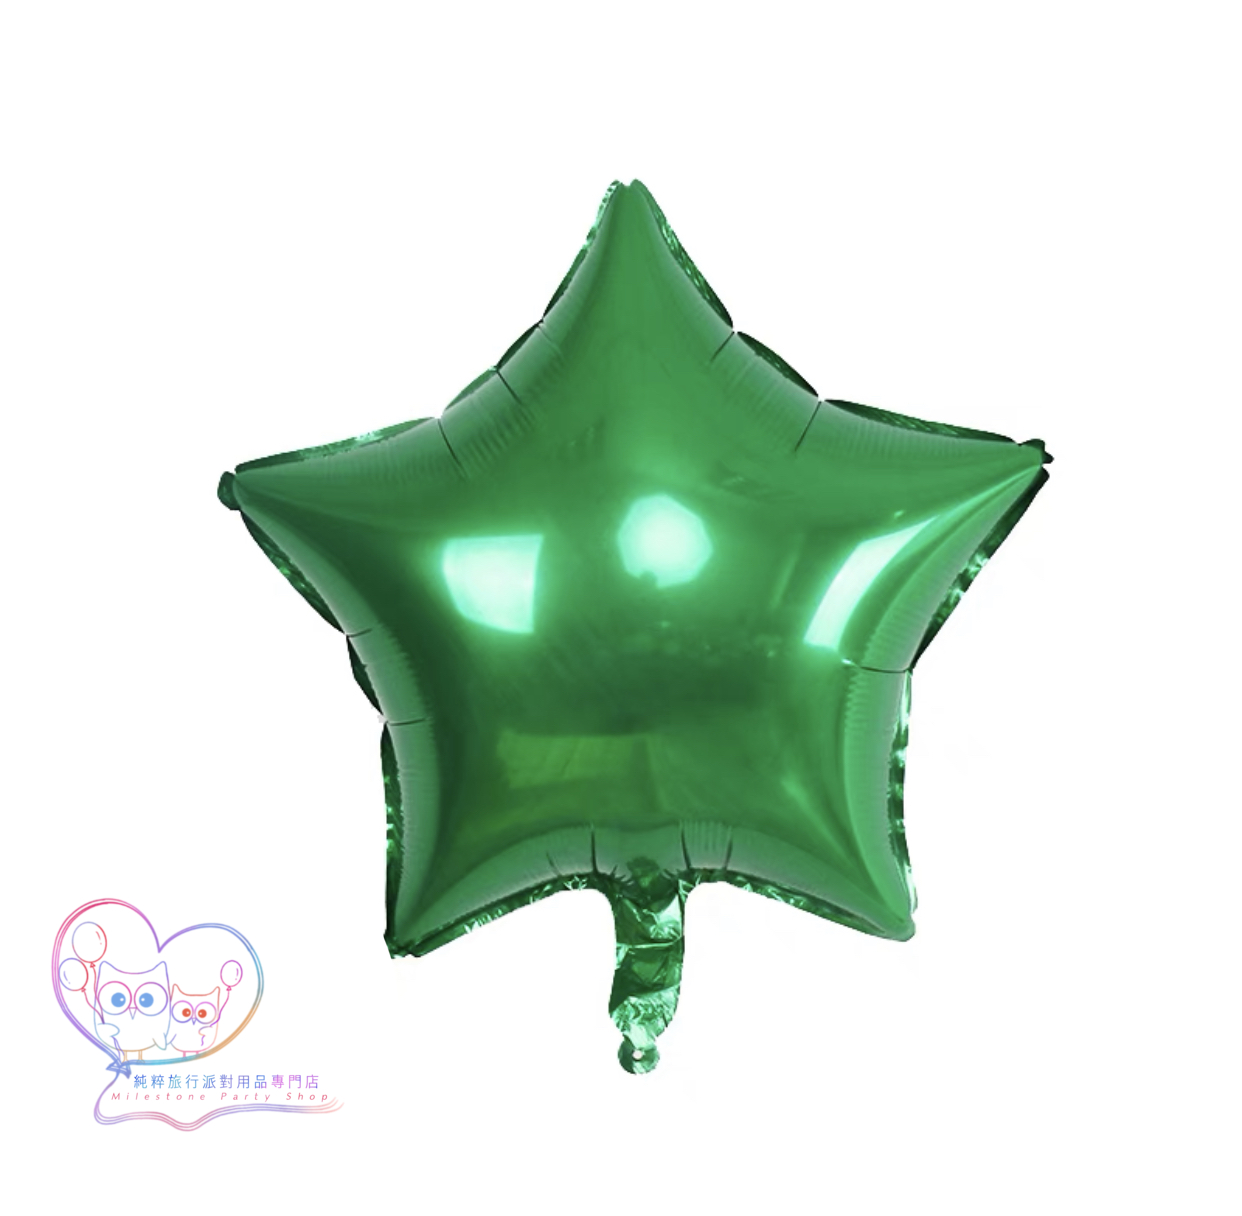 18吋星星鋁膜氣球 (綠色) 18S14